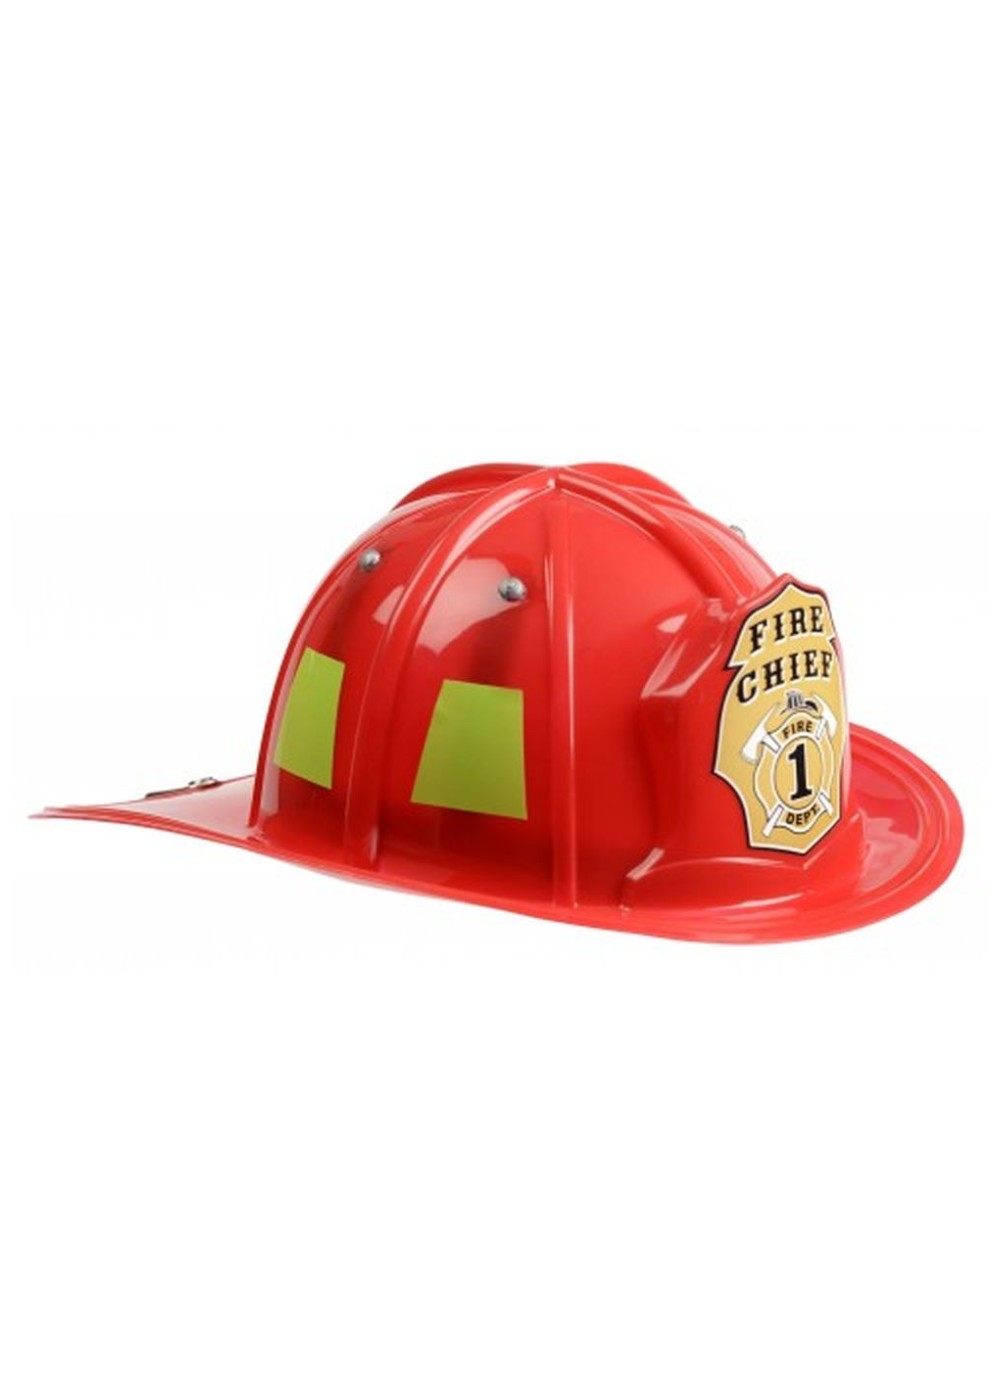 Red Firefighter Boys Helmet